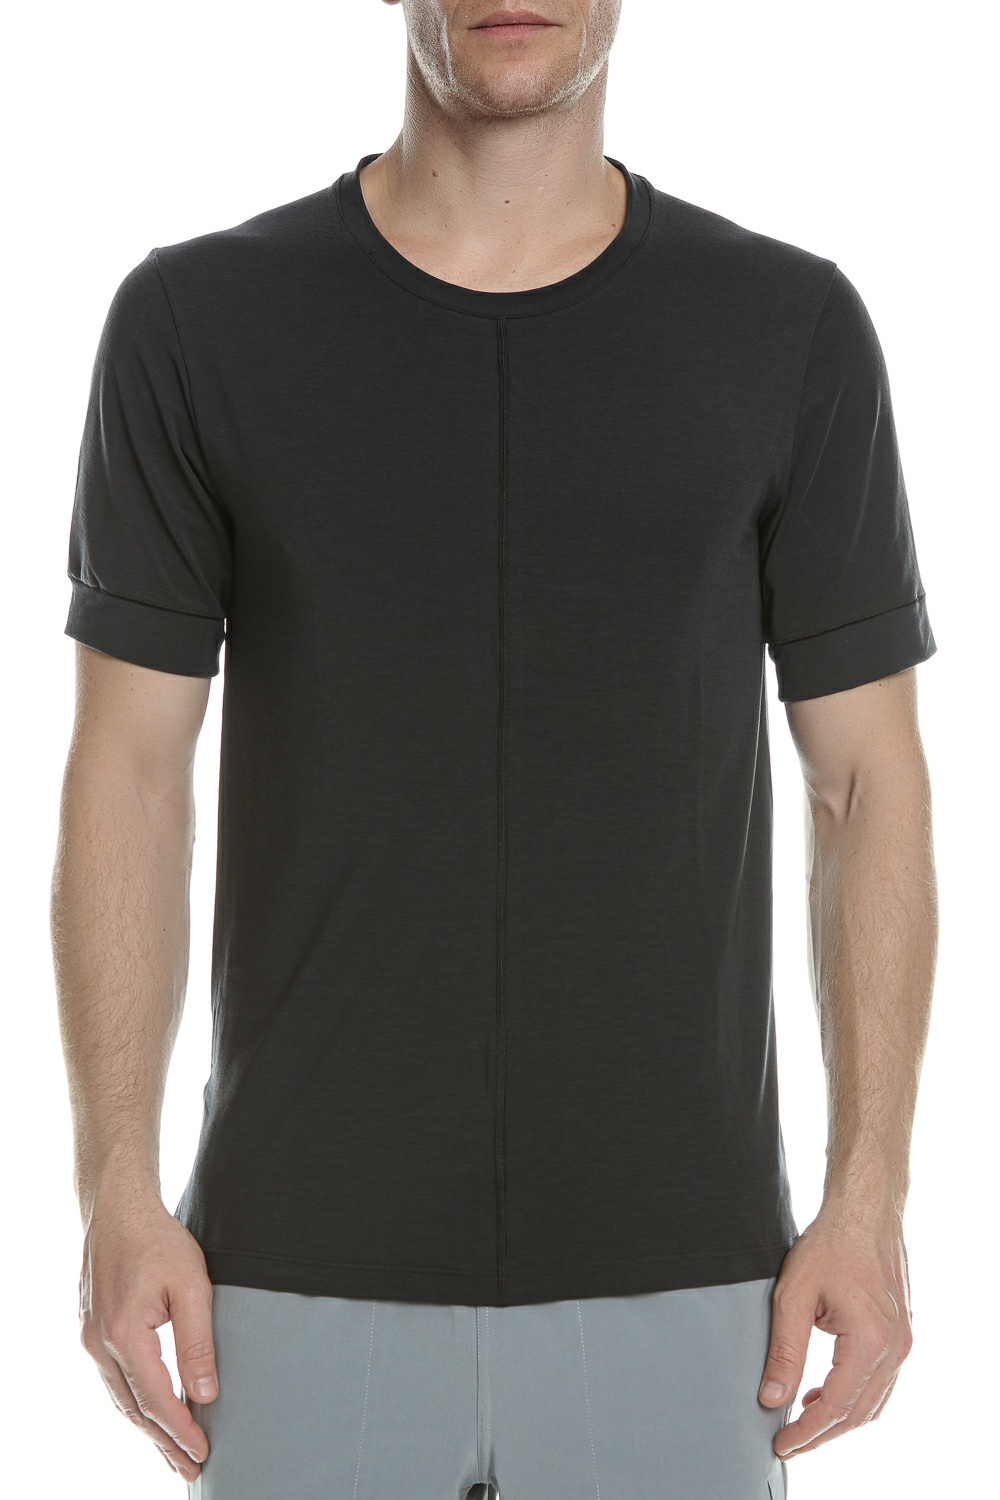 Ανδρικά/Ρούχα/Αθλητικά/T-shirt NIKE - Ανδρική μπλούζα NIKE YOGA DF TOP SS μαύρη